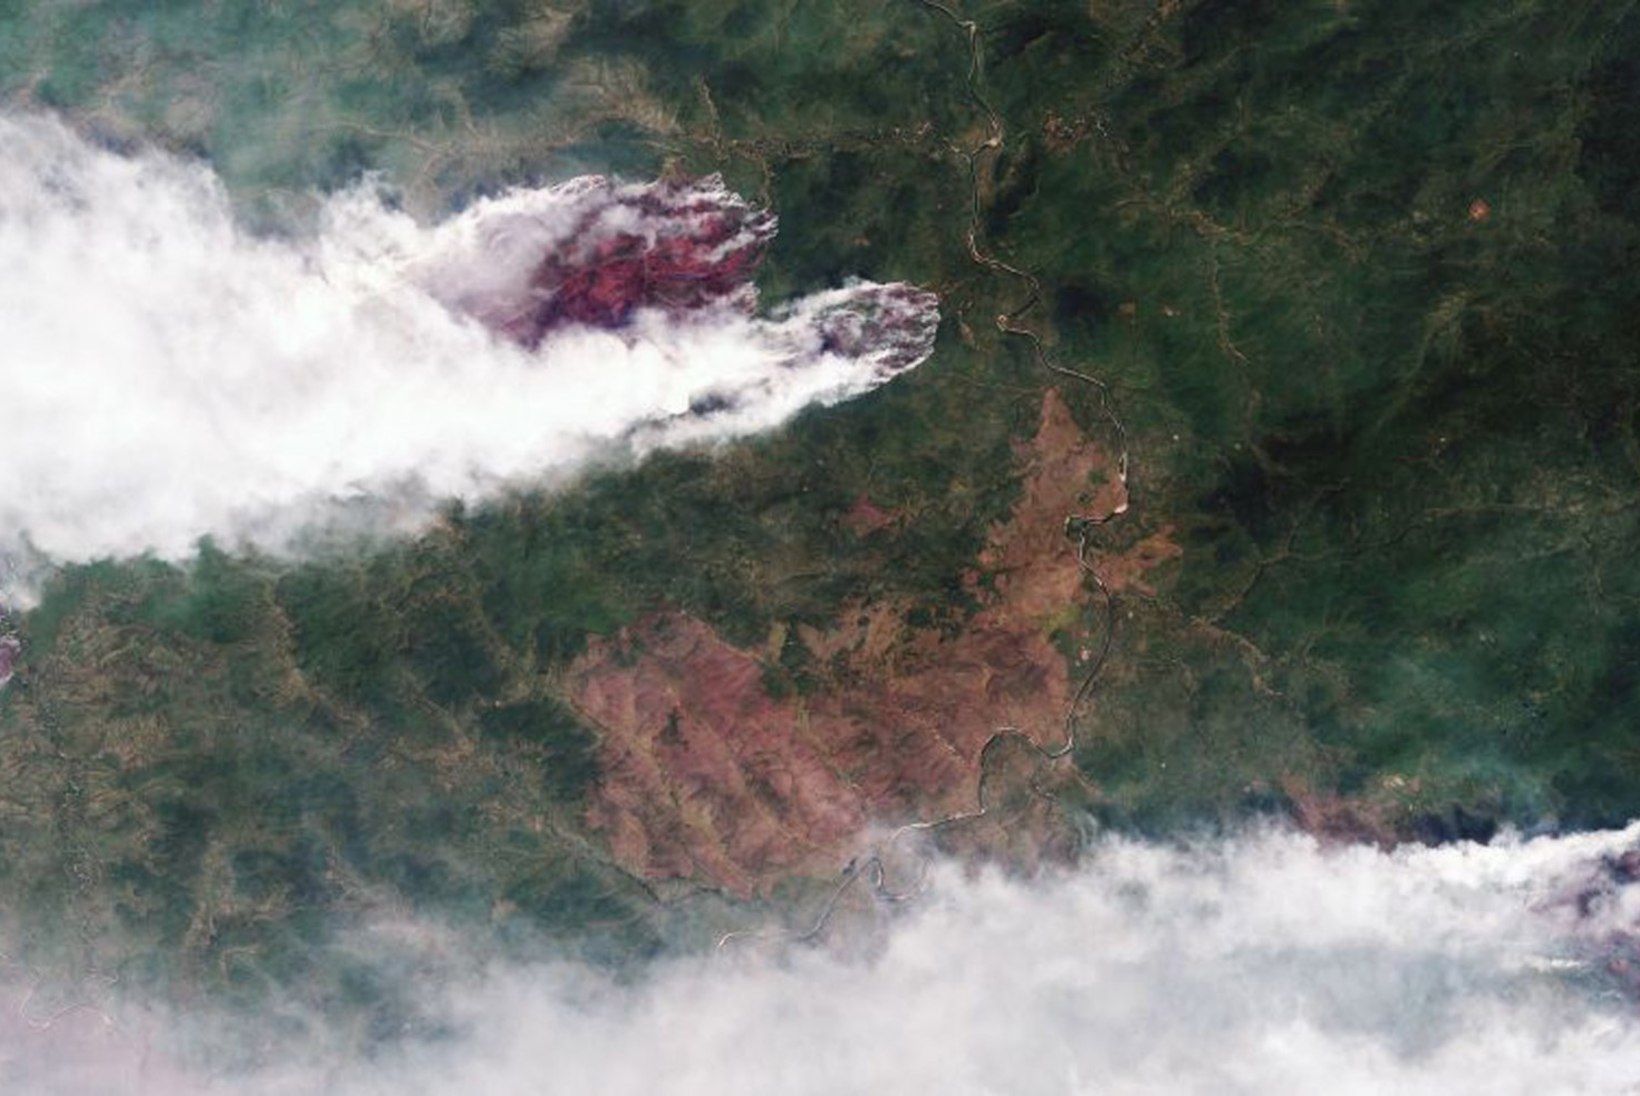 GALERII | SIBER PÕLEB: tulekahjud hävitavad kümneid tuhandeid ruutkilomeetreid loodust